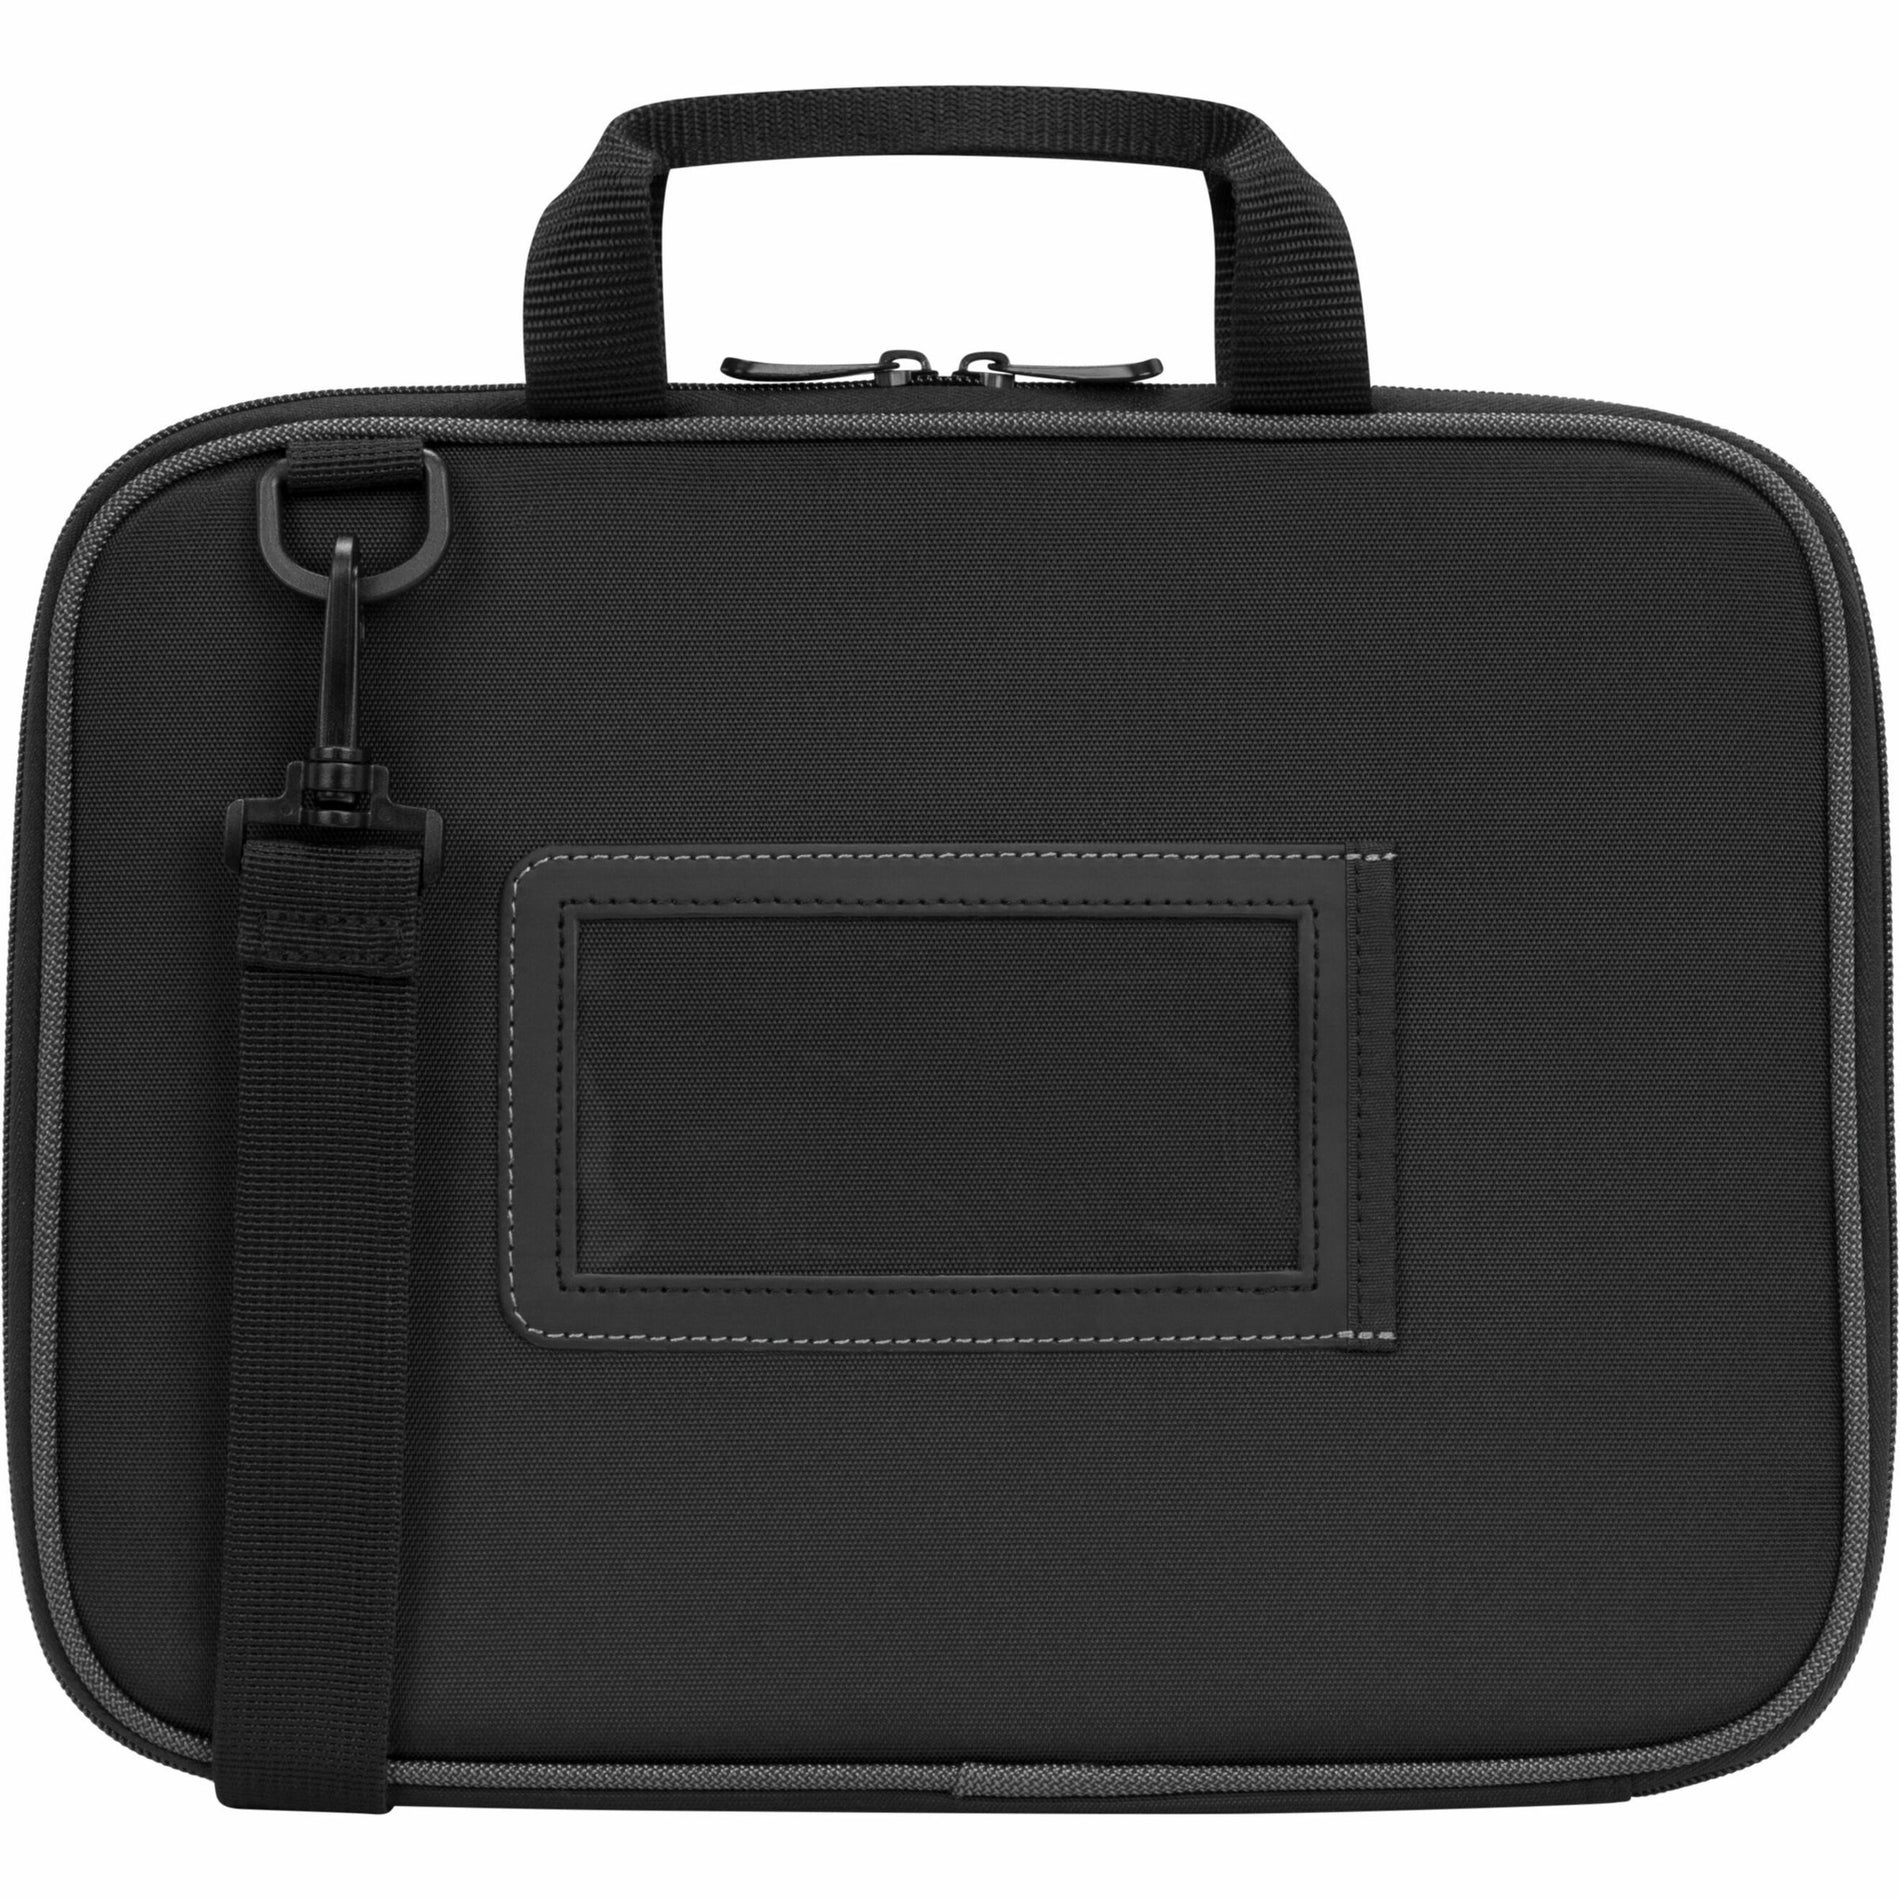 Targus TED006GL 11.6 "Work-in Essentials Case for Chromebook - Noir / Gris Étui léger et durable pour accessoires et adaptateur d'alimentation